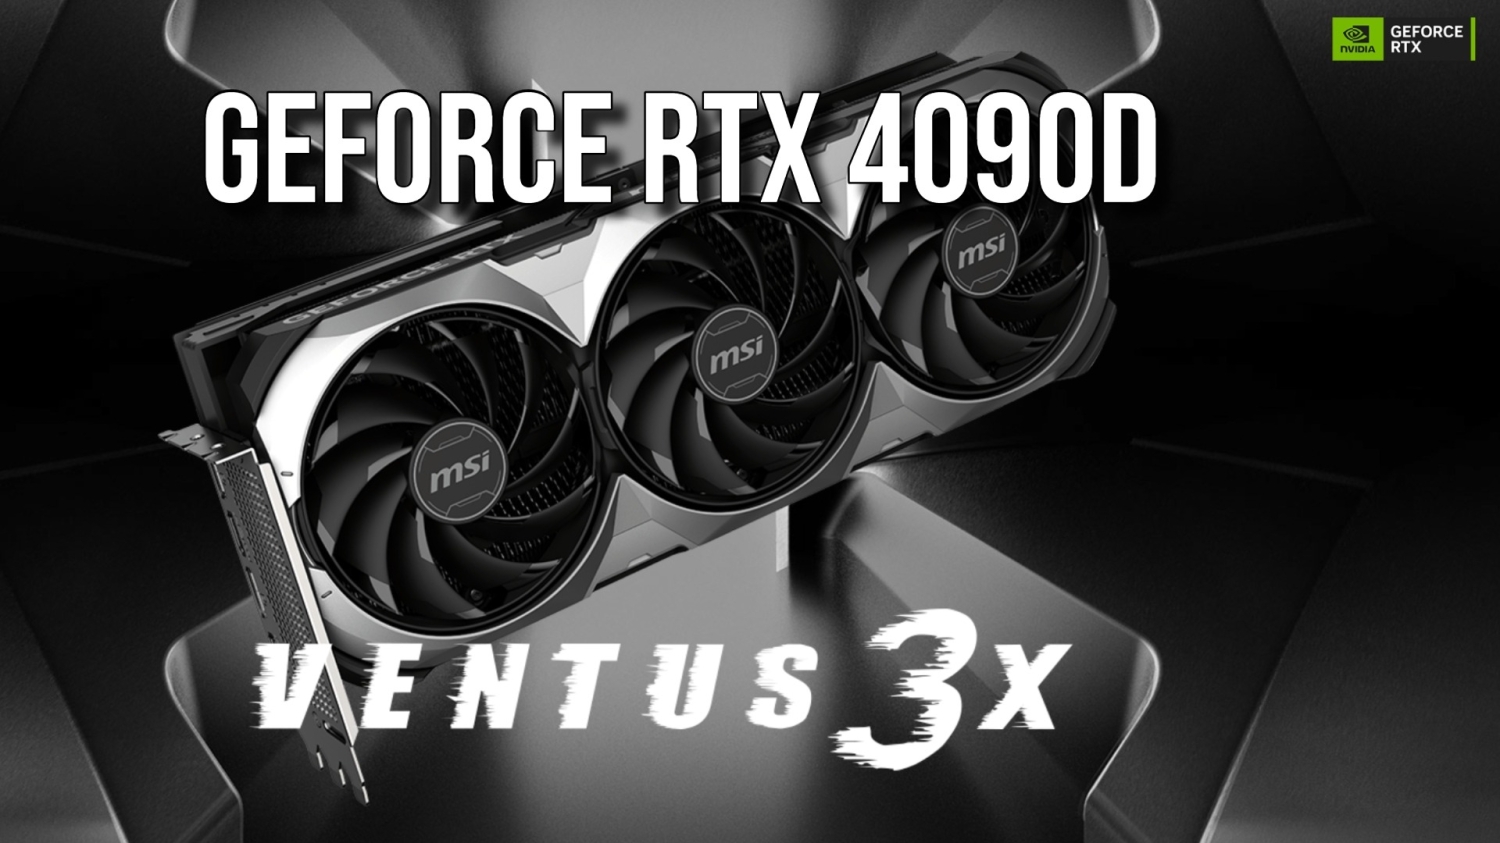 MSI giới thiệu GPU chơi game Nvidia mới tại Trung Quốc - GeForce RTX 4090D 24G Ventus 3X, một lựa chọn tiết kiệm hơn.